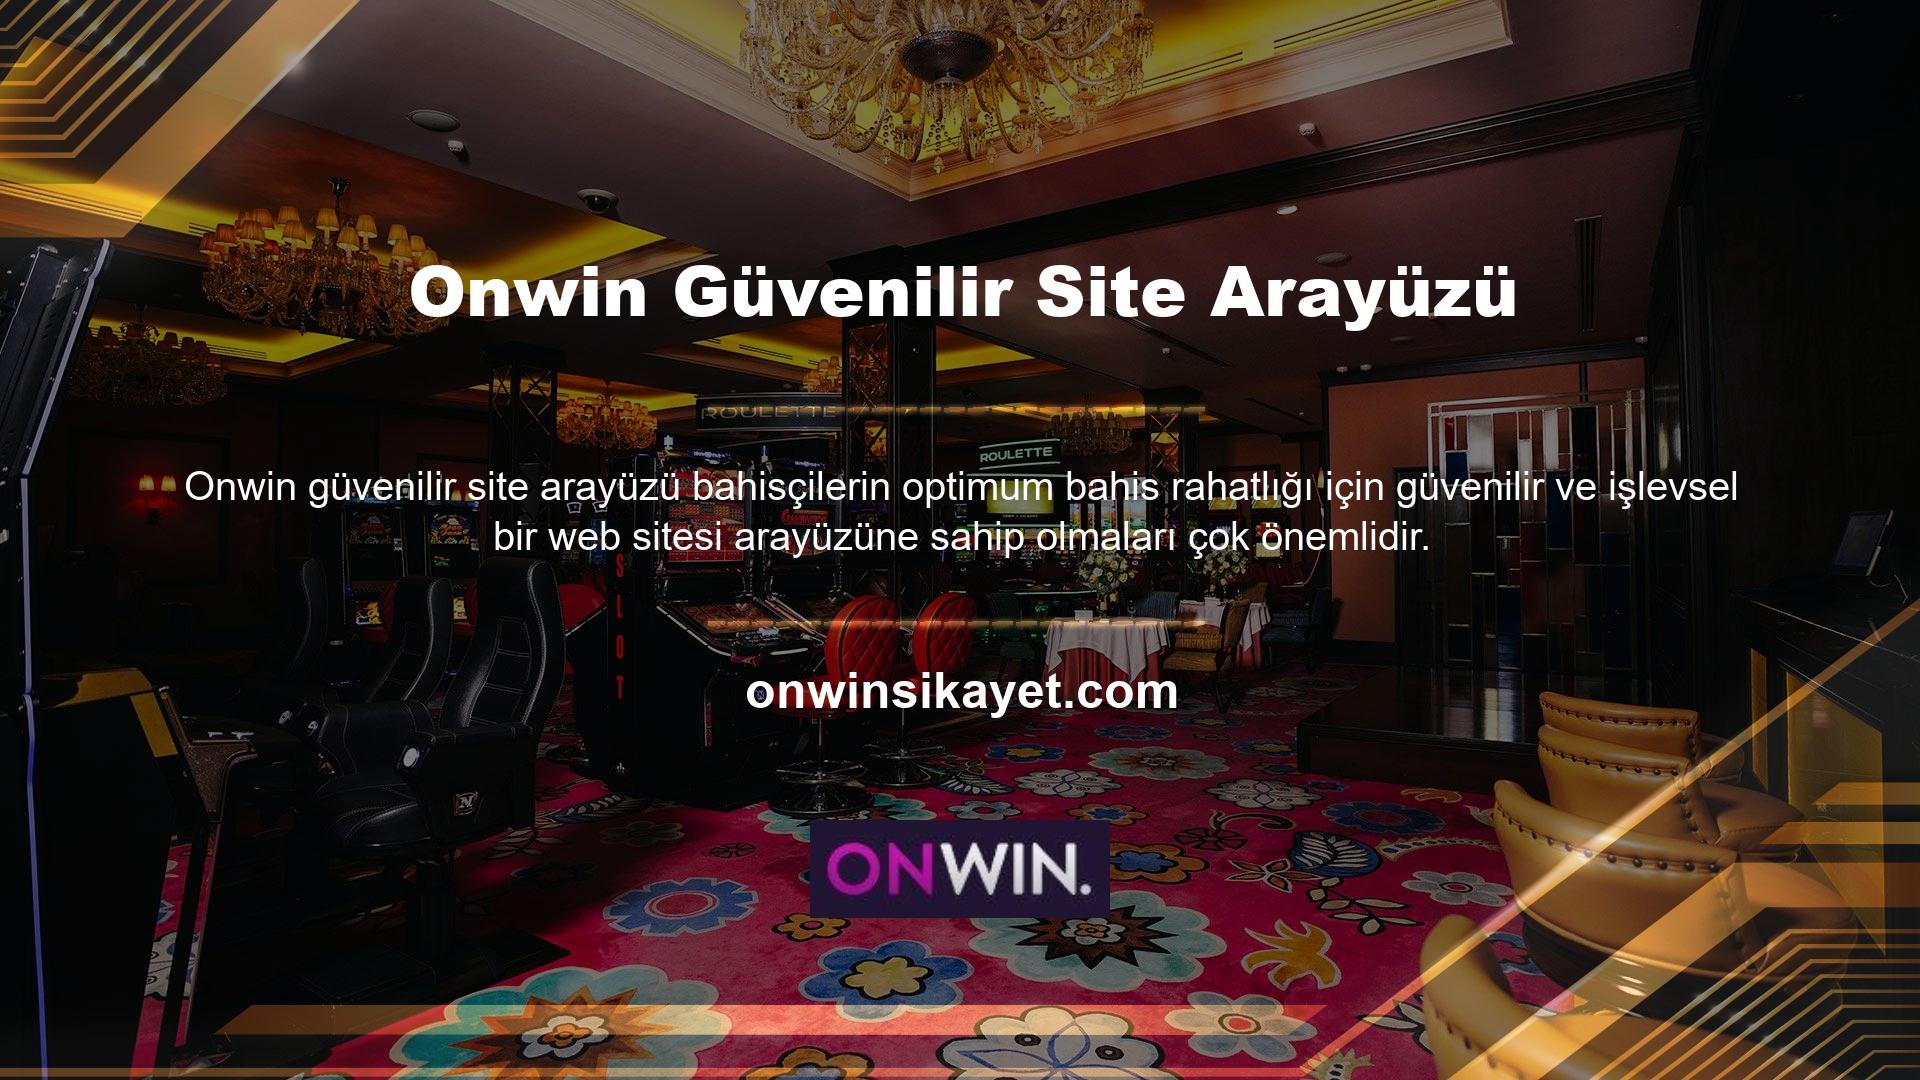 Onwin web sitesi arayüzü diğer temalarda olduğu gibi gelişmiş bir altyapı sistemi ile tasarlanmıştır